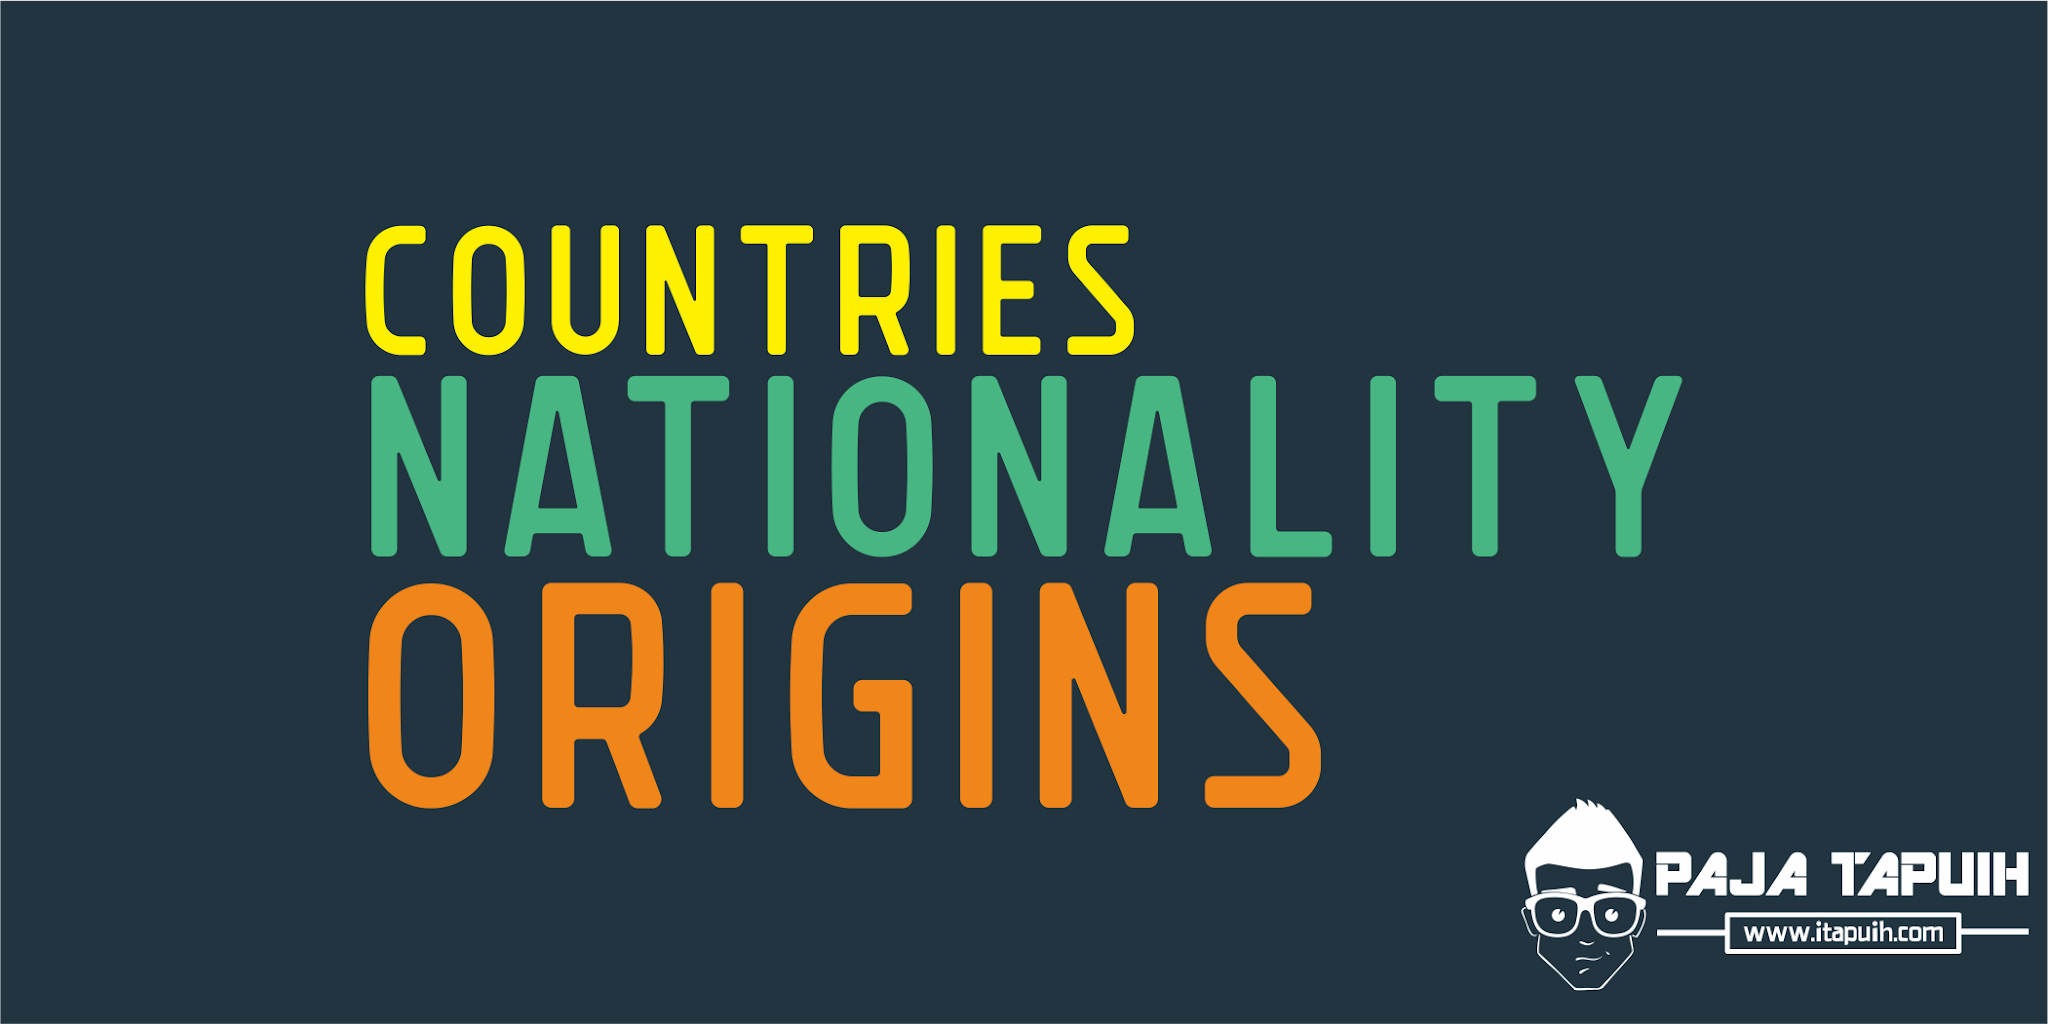 Daftar Kosakata bahasa Inggris Countries and Nationality